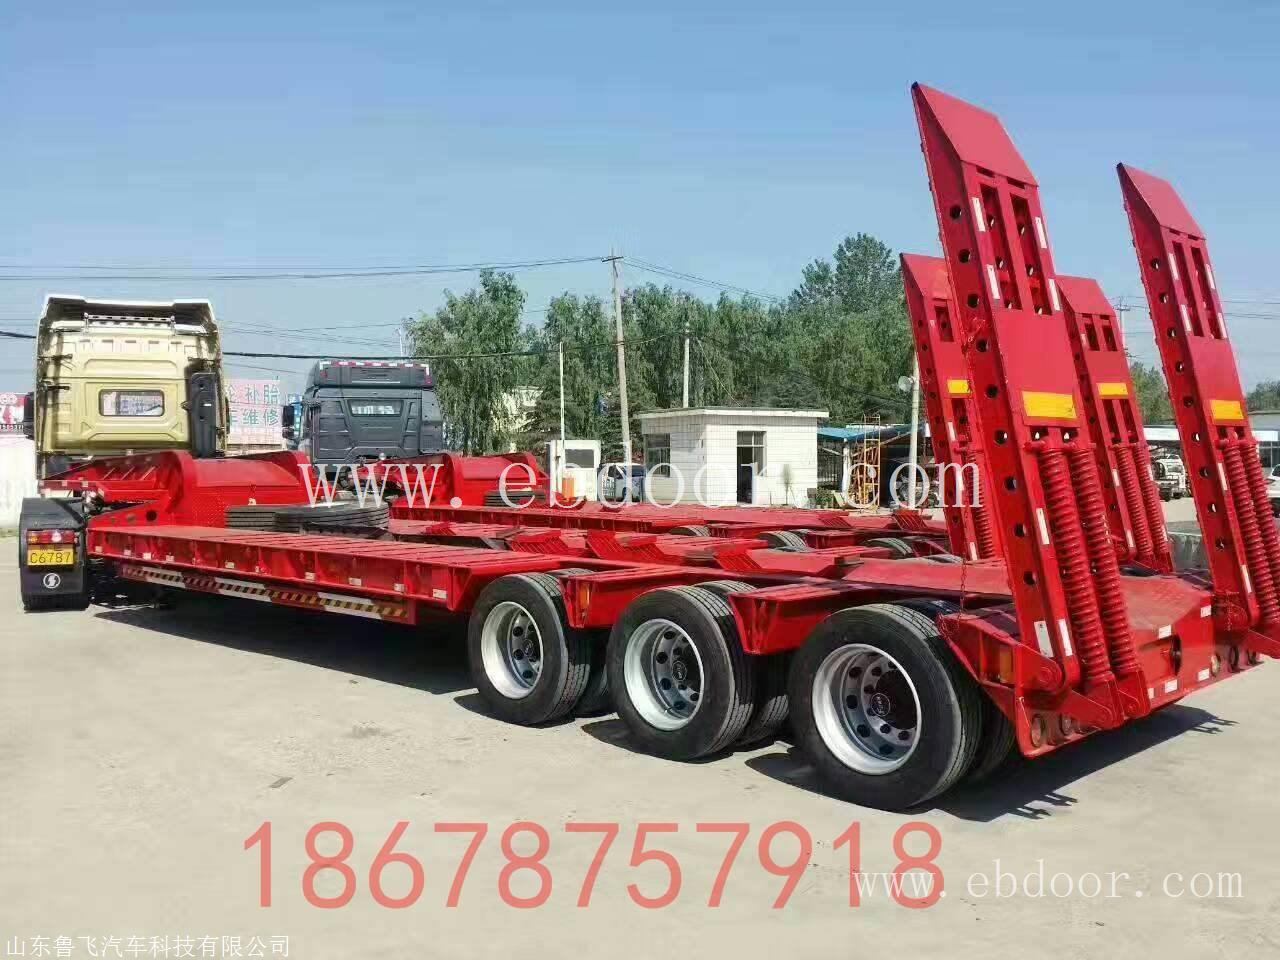 新疆12米三轴轮胎外露挖掘机运输车 产品升级